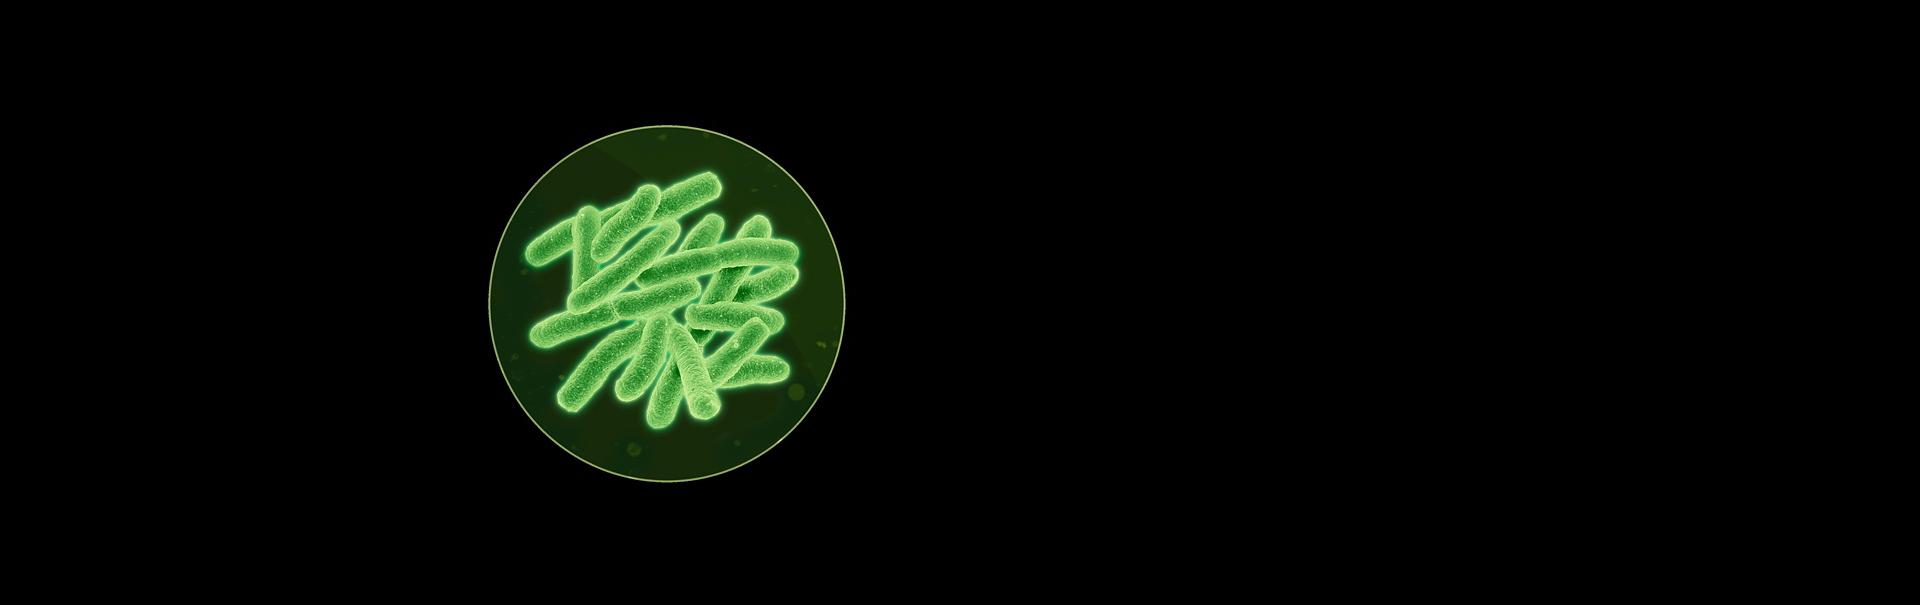 תמונה של חיידקים תחת מיקרוסקופ